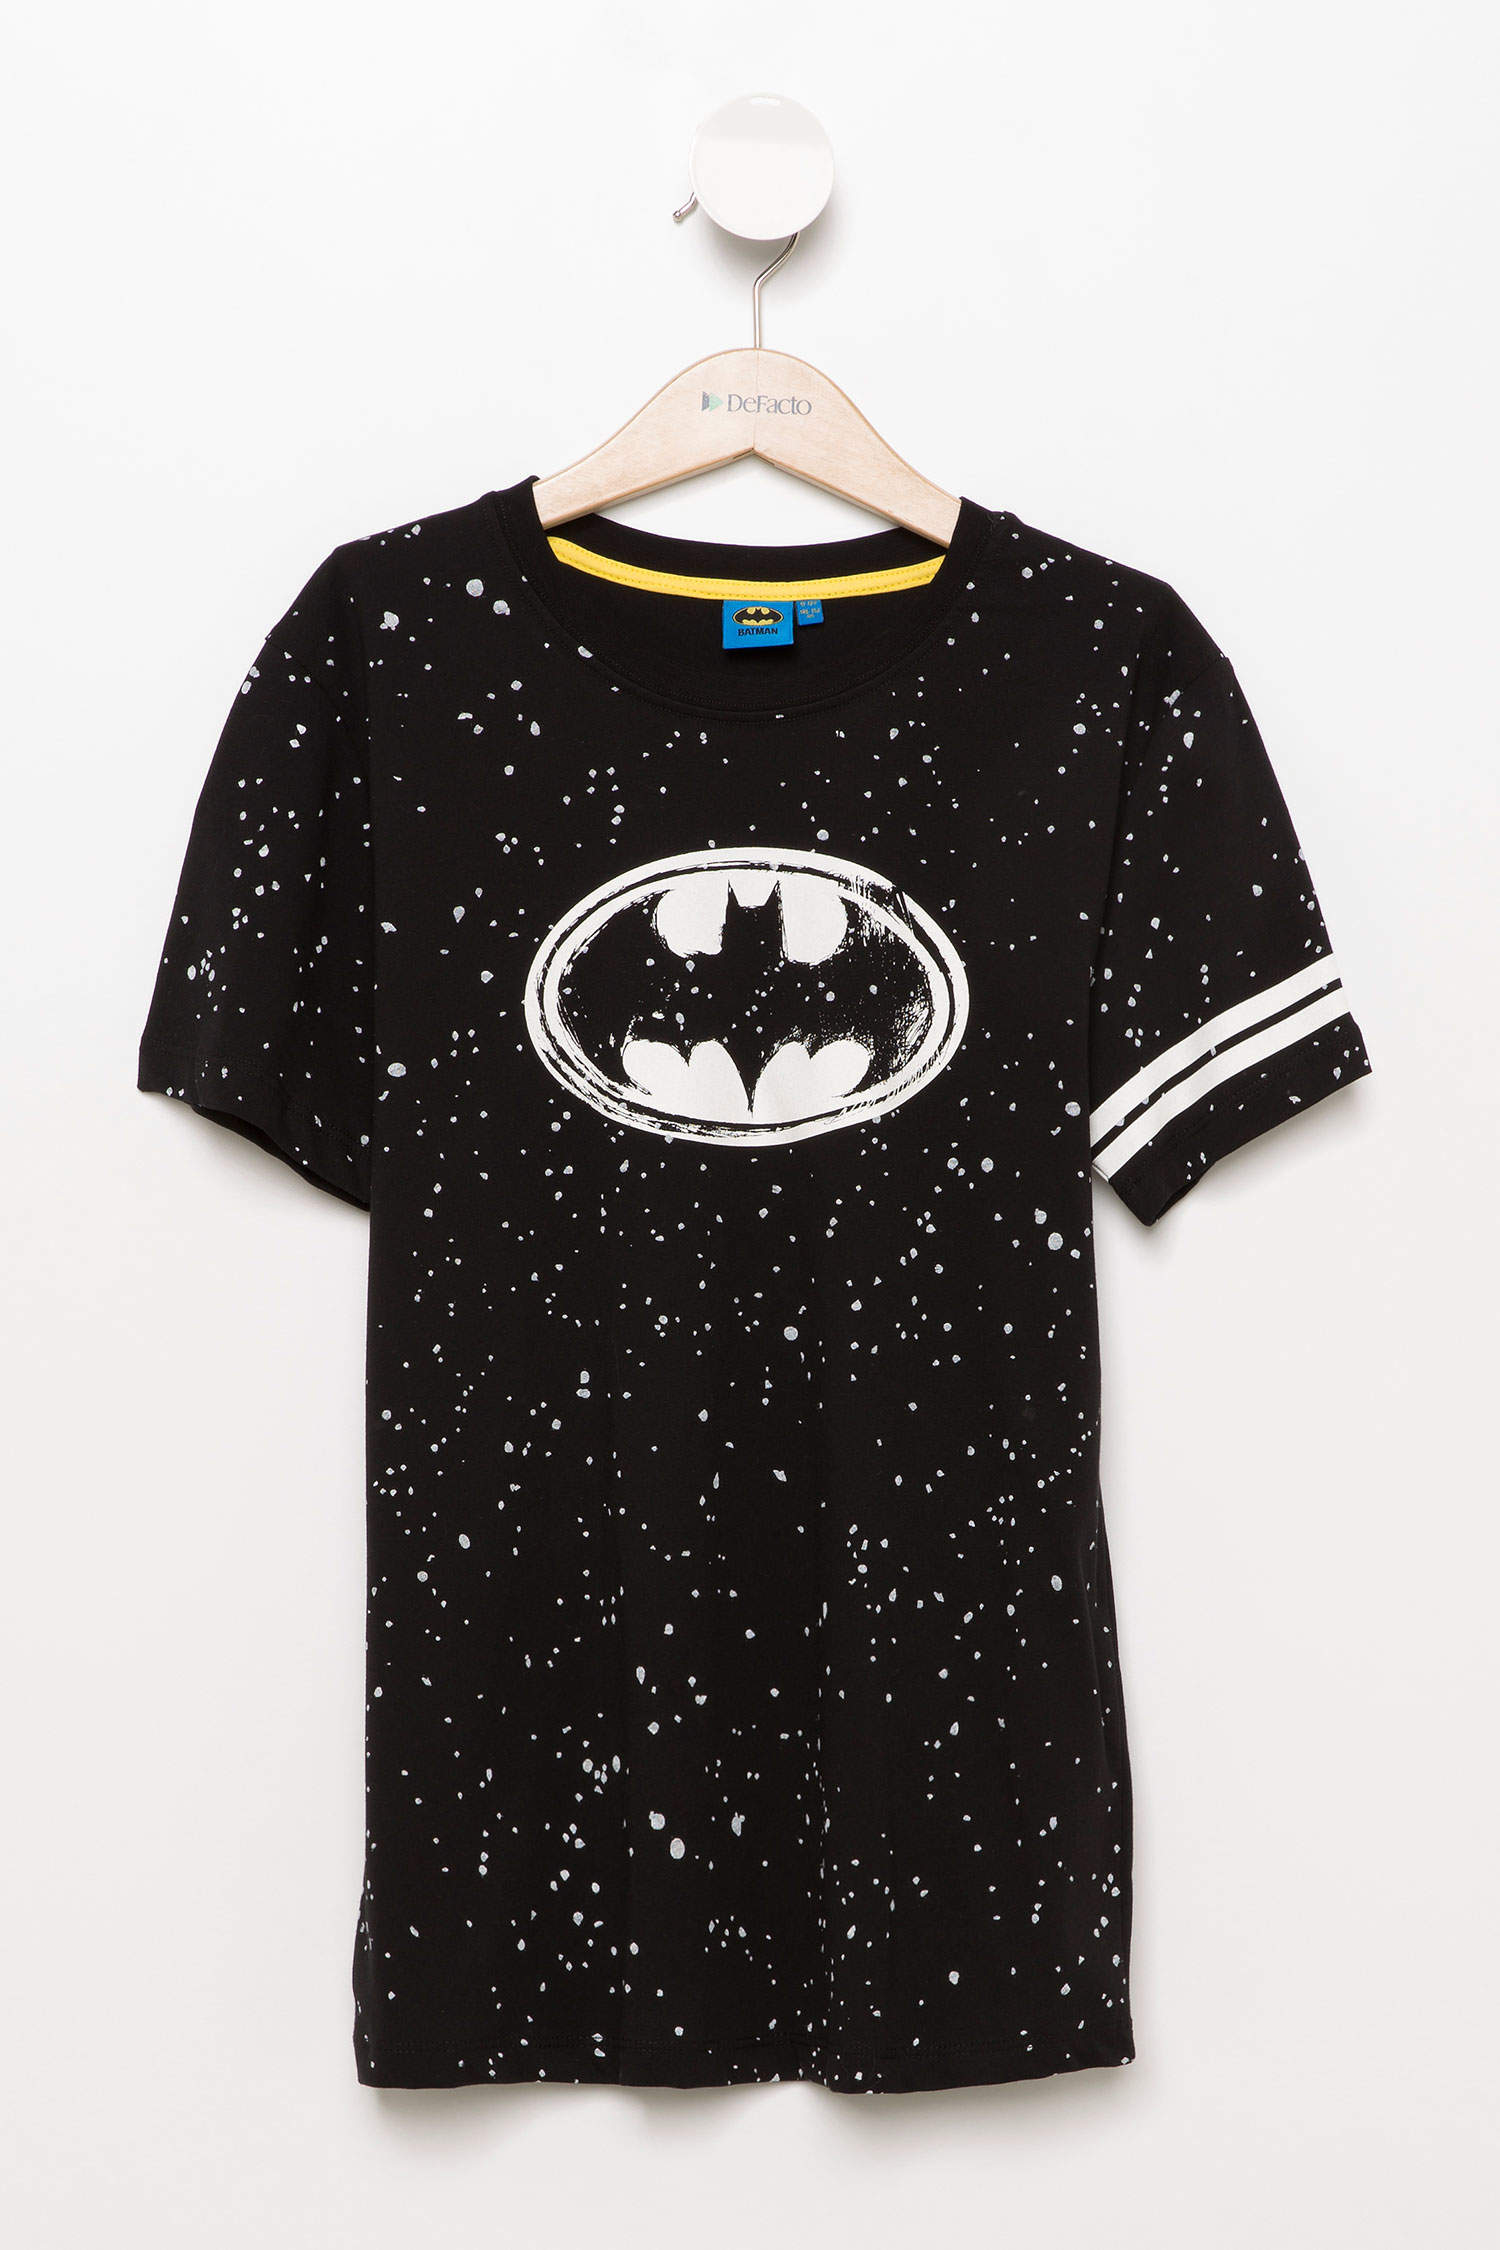 Defacto Batman Lisanslı Genç Erkek T-shirt. 4